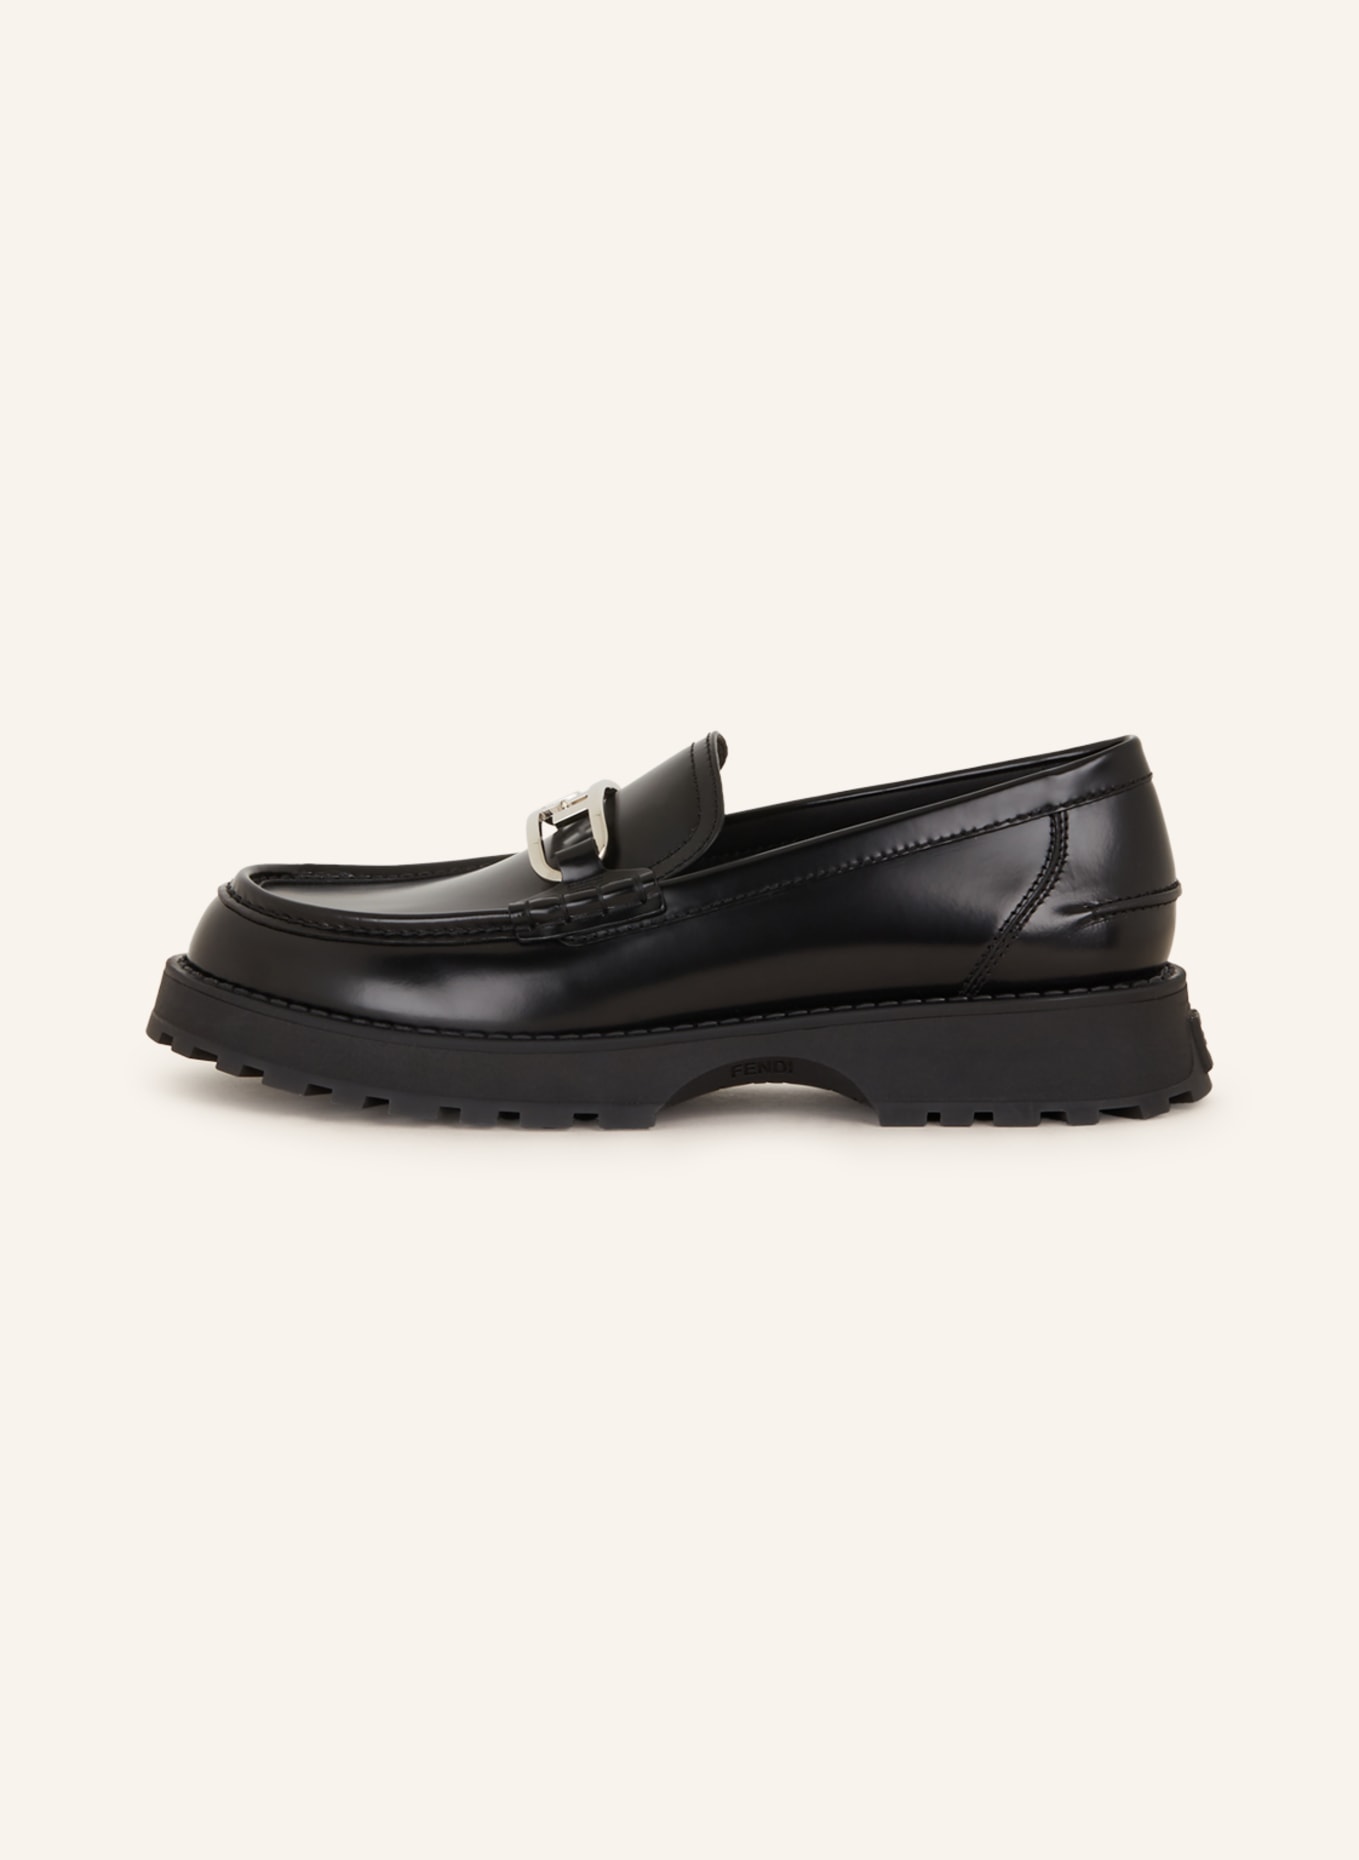 FENDI Loafers, Color: BLACK (Image 4)